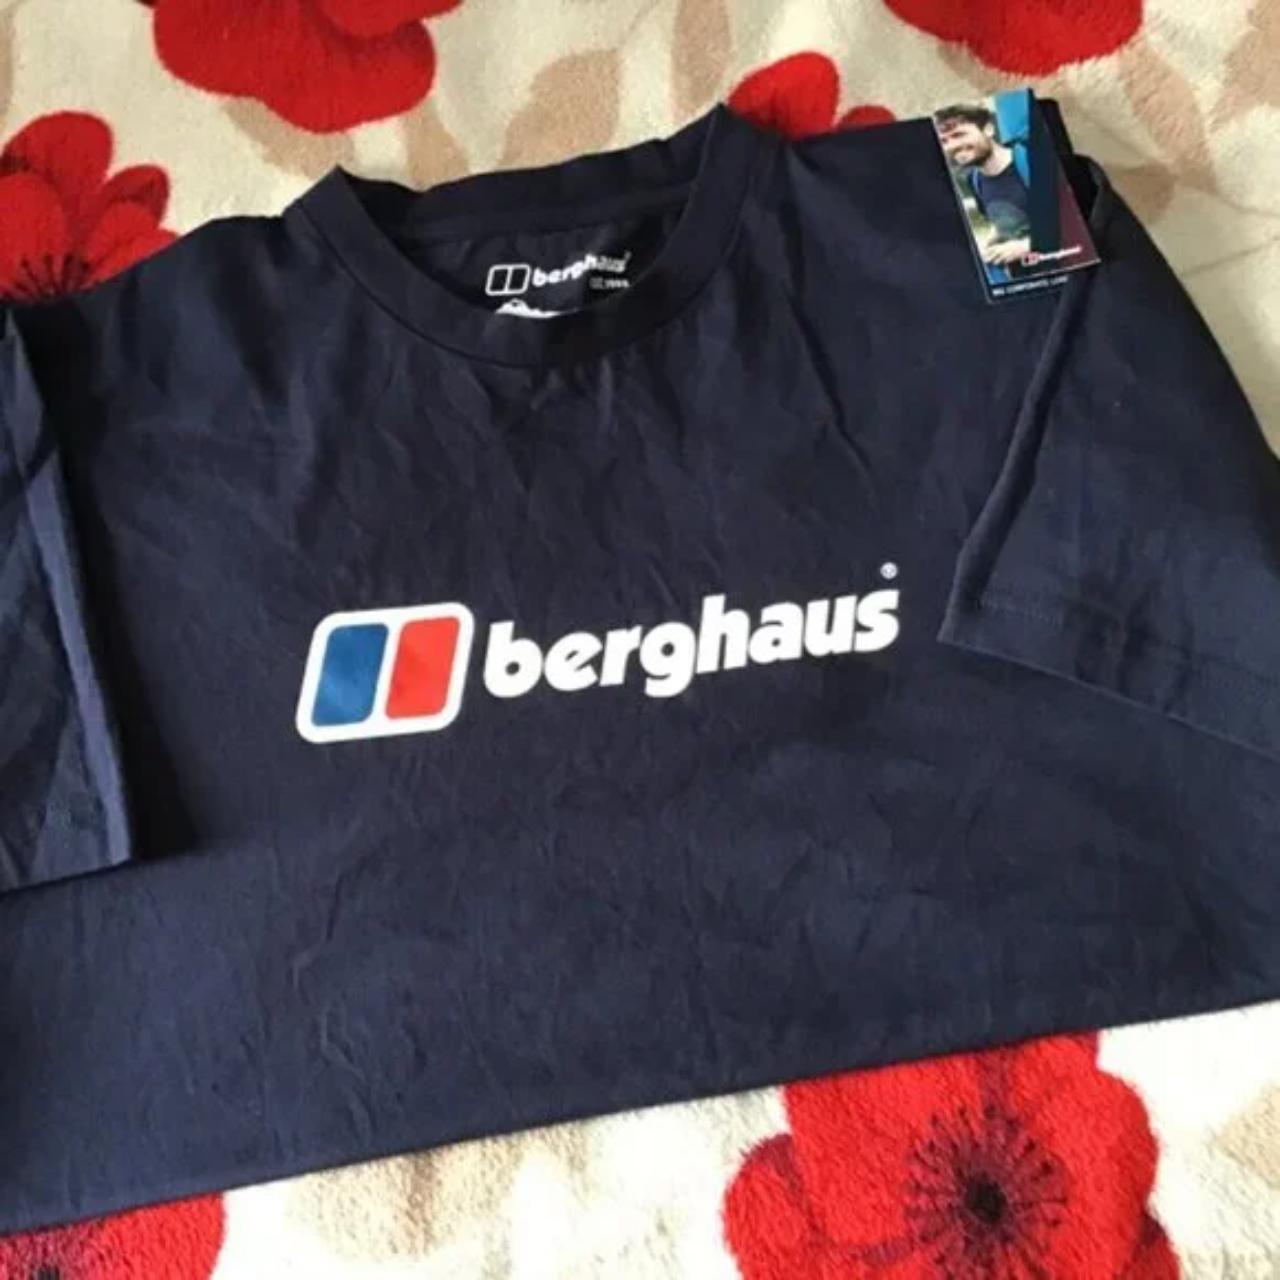 Berghaus Men's Navy and White T-shirt (2)